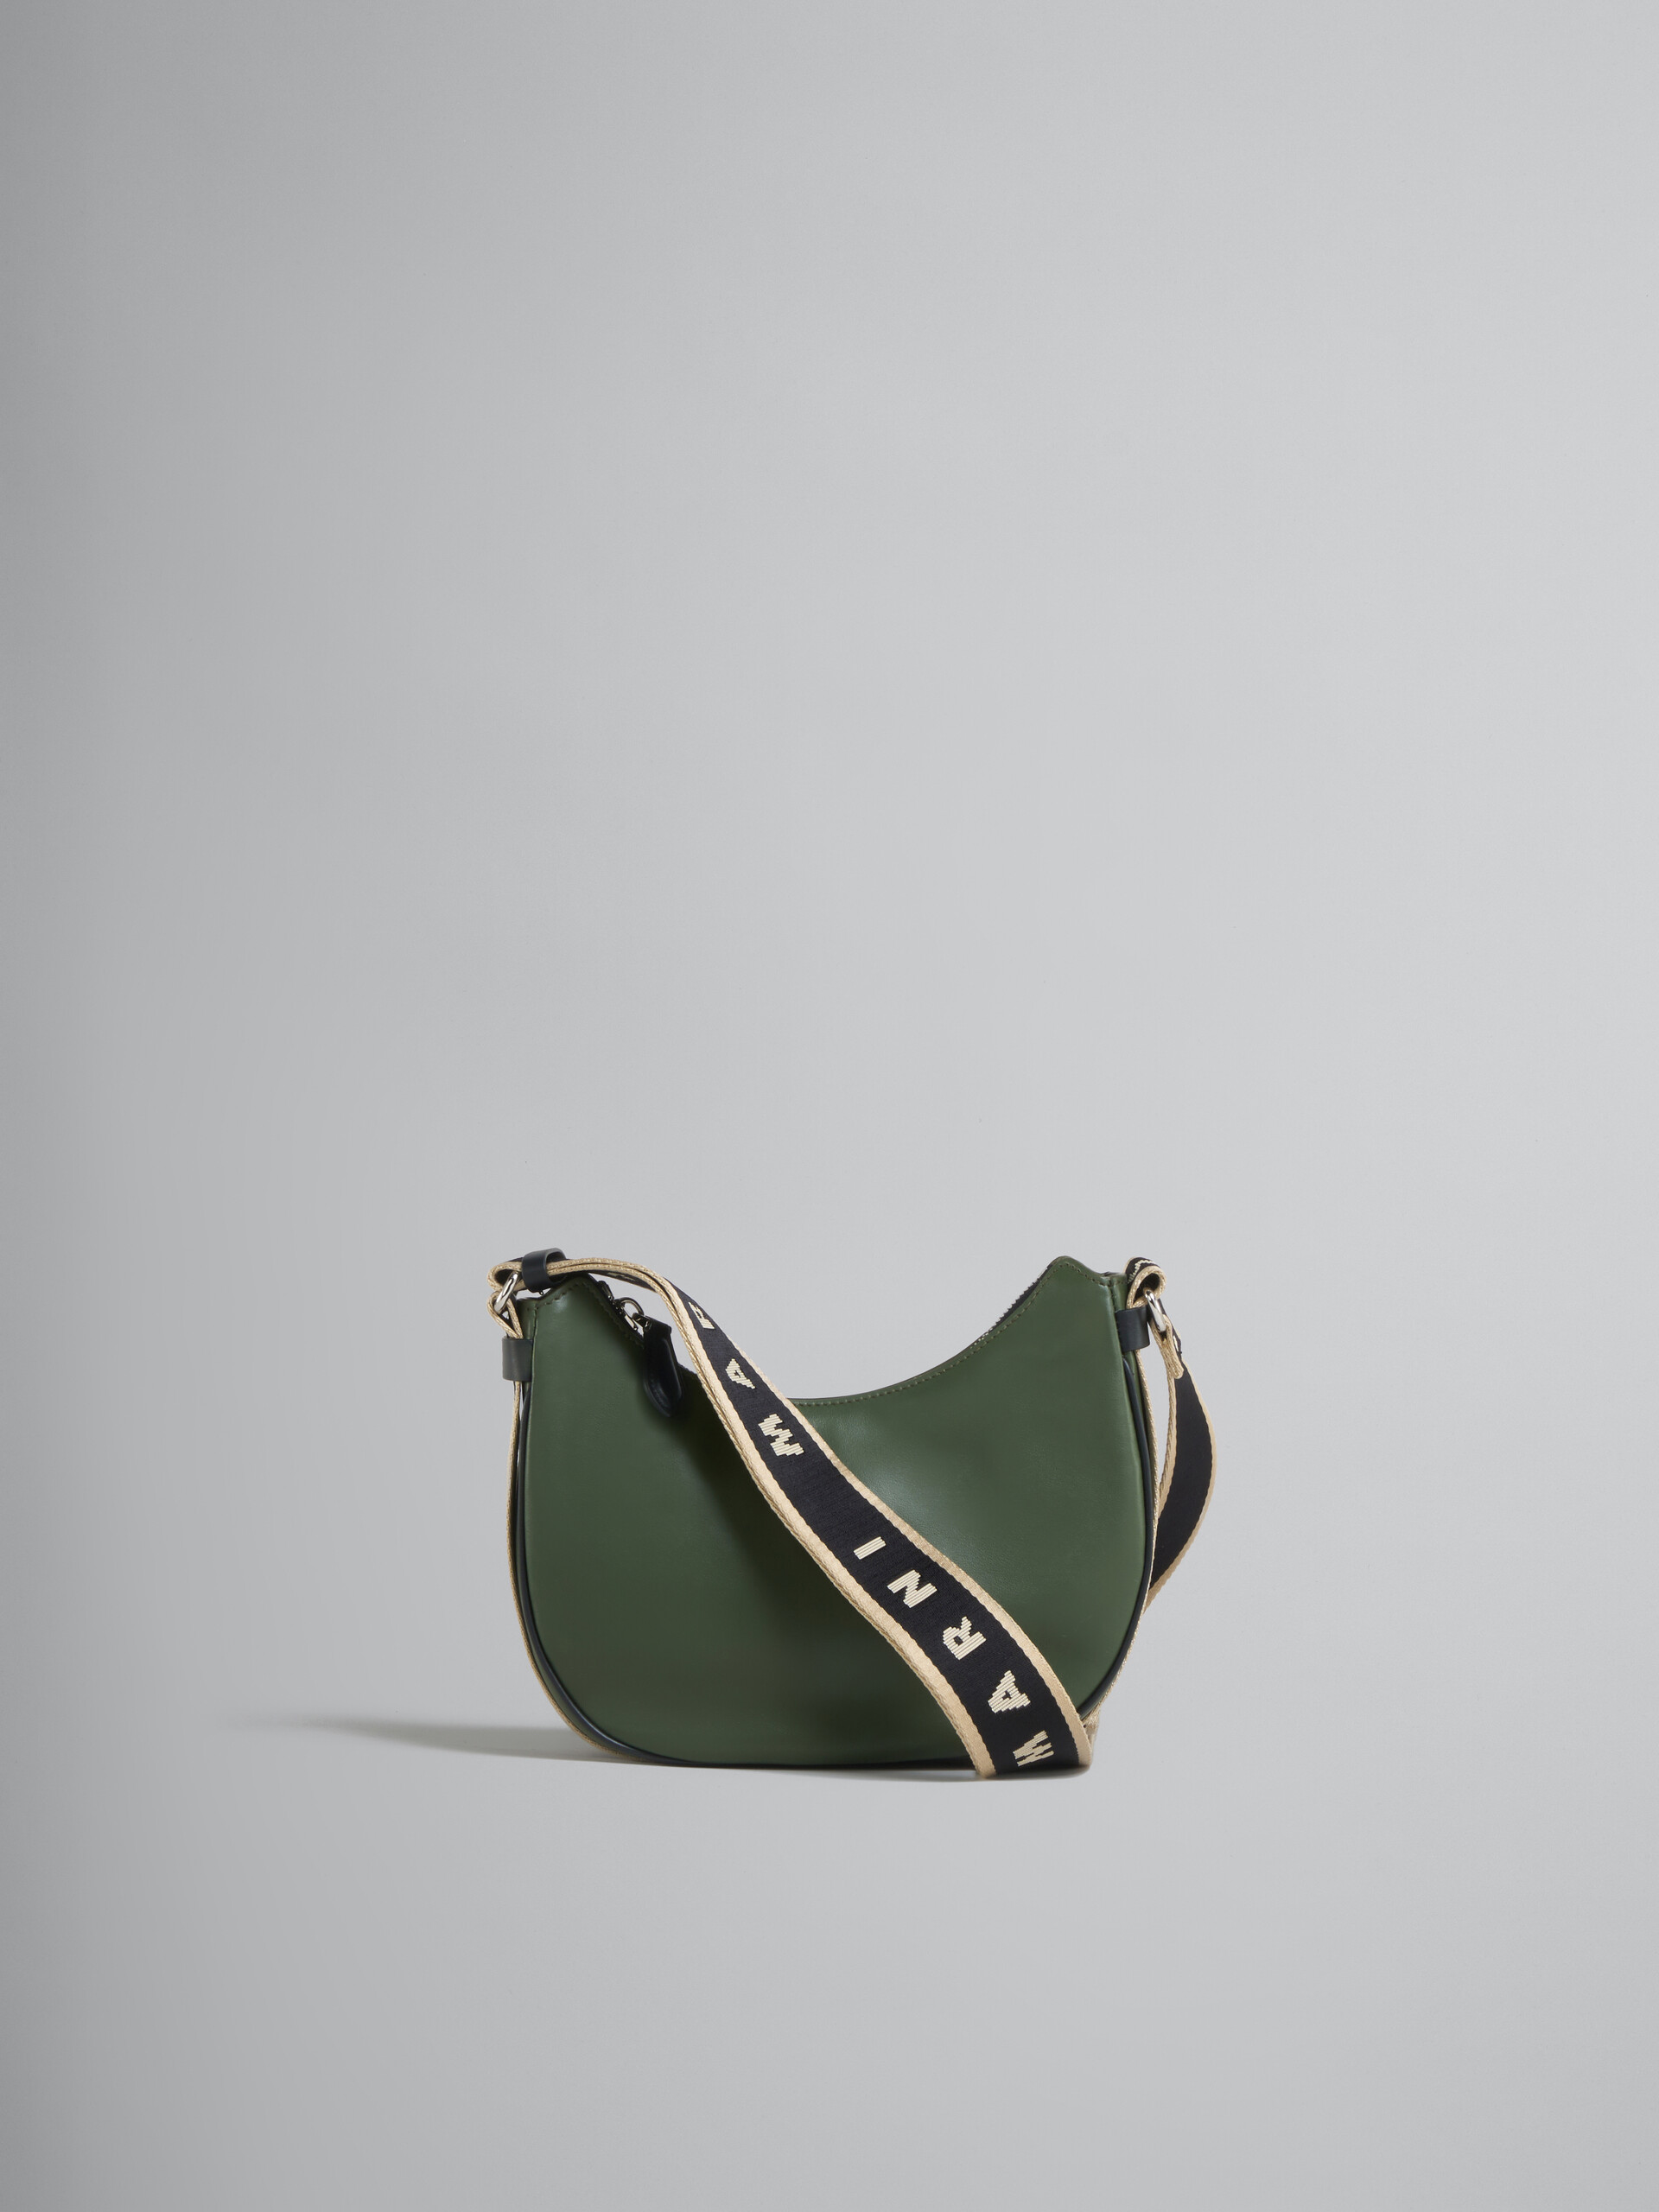 Bey Bag in green leather - Shoulder Bag - Image 1